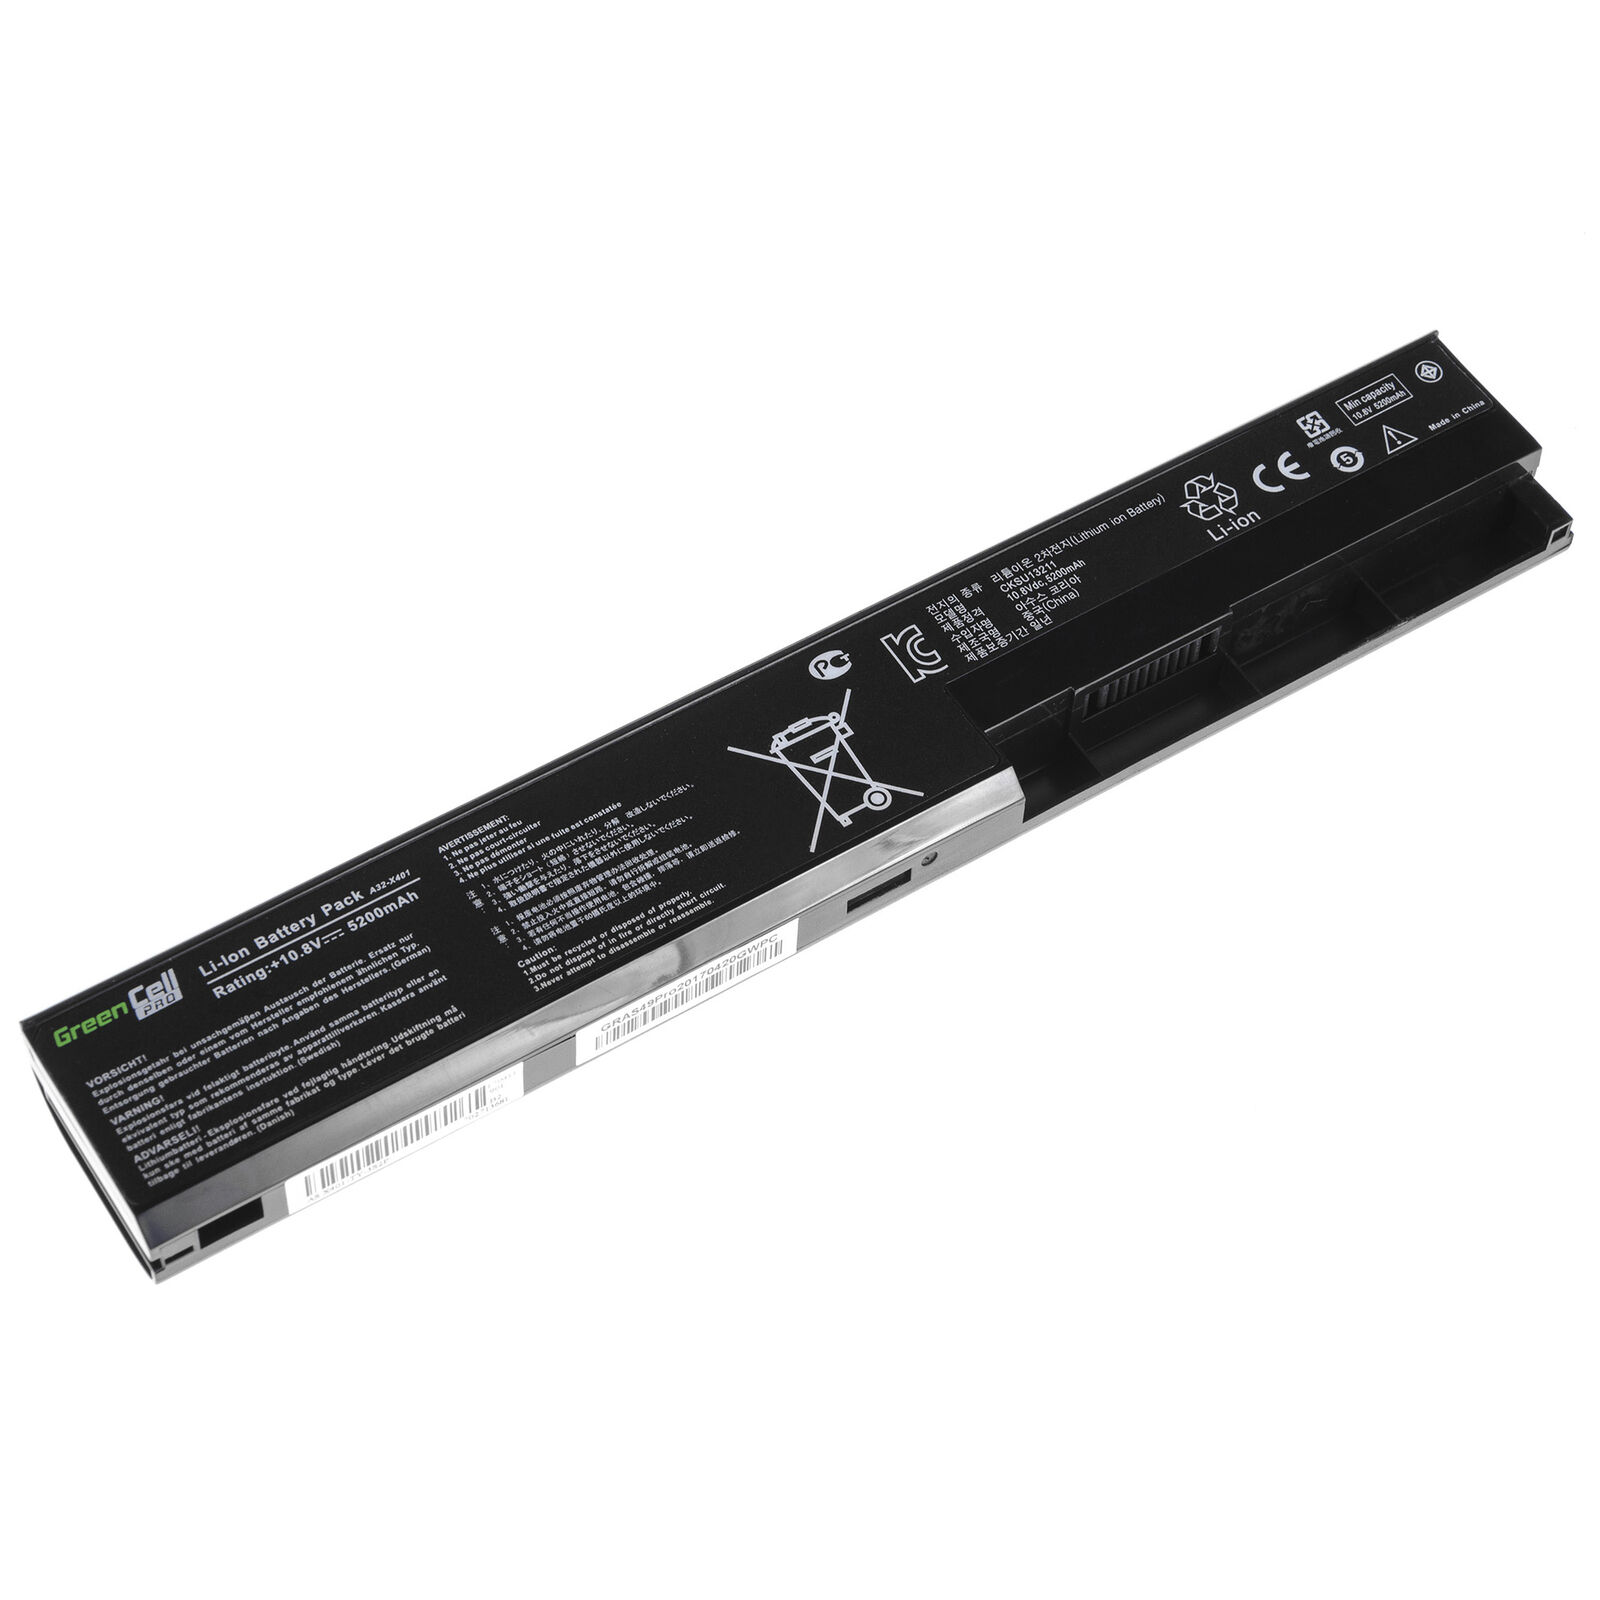 Asus X301 X301A X301U X501 X501A X501U A31-X401 A41-X401 kompatibelt batterier